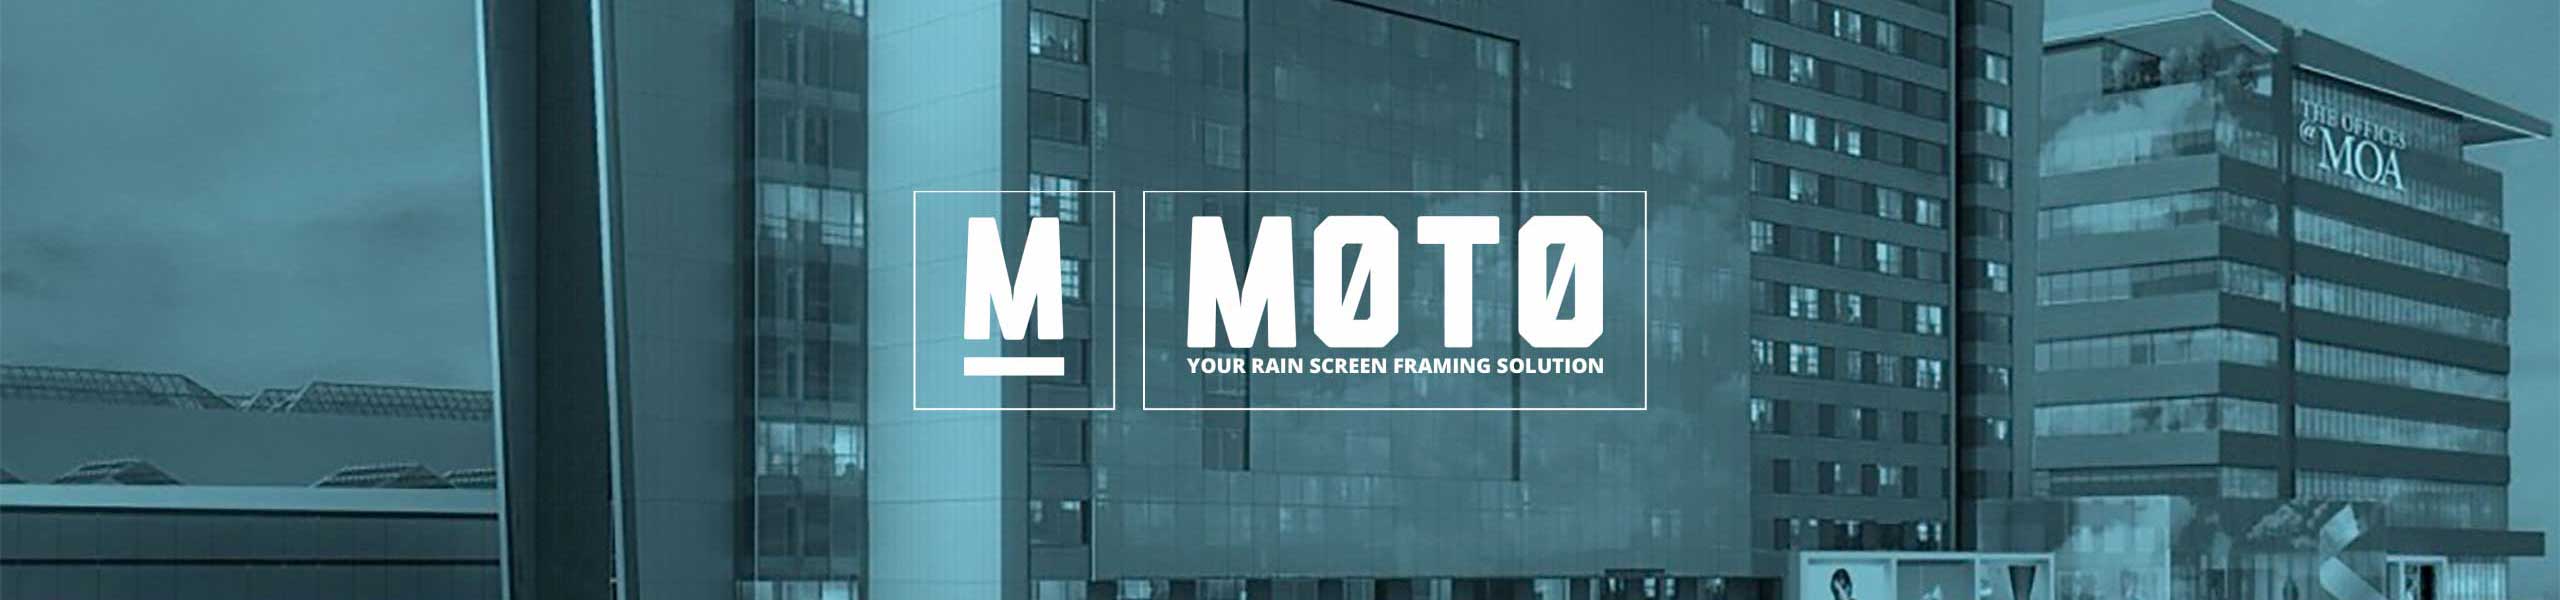 MOTO Aluminum Rainscreen Framing